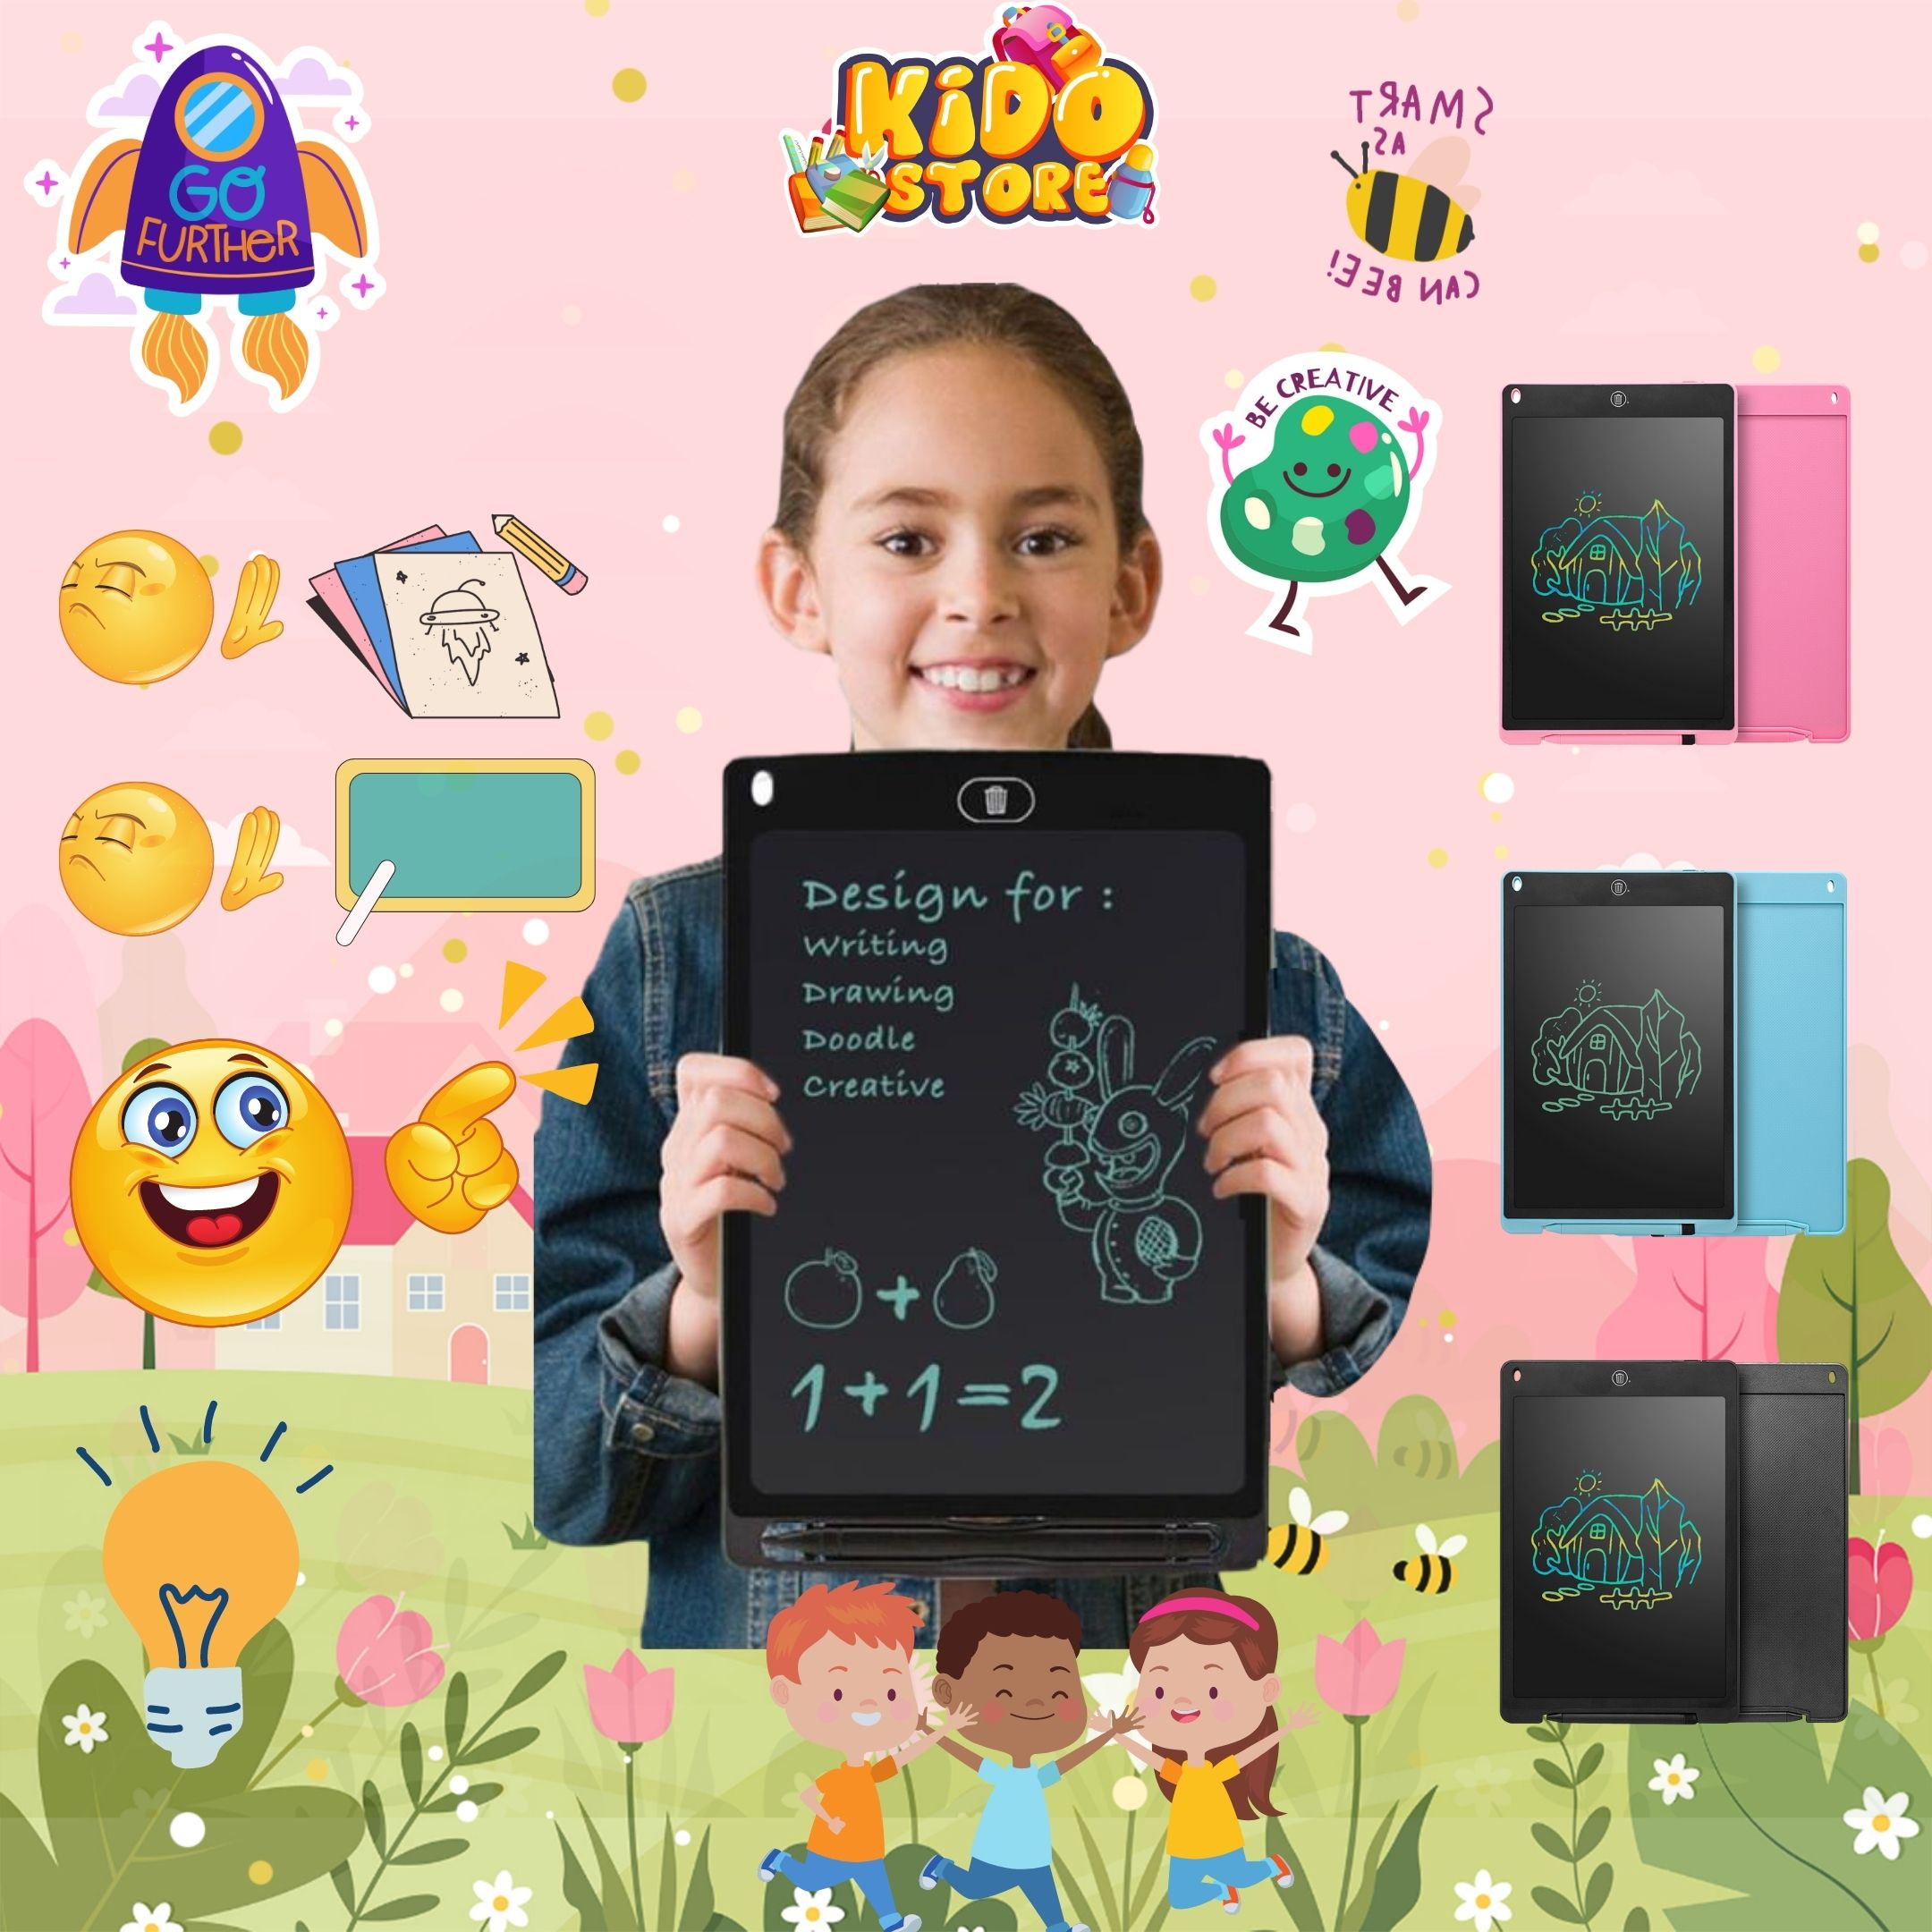 Bảng vẽ LCD tự xoá cho bé học tập là sản phẩm giáo dục không thể bỏ qua. Bé có thể ghi chép, tập viết chữ, giải toán và vẽ tranh miễn phí mà không cần giấy bút. Sau khi sử dụng xong, bé có thể xoá sạch để sử dụng lại. Đây là sản phẩm thân thiện với môi trường và giúp bé cảm thấy thoải mái hơn khi học tập.